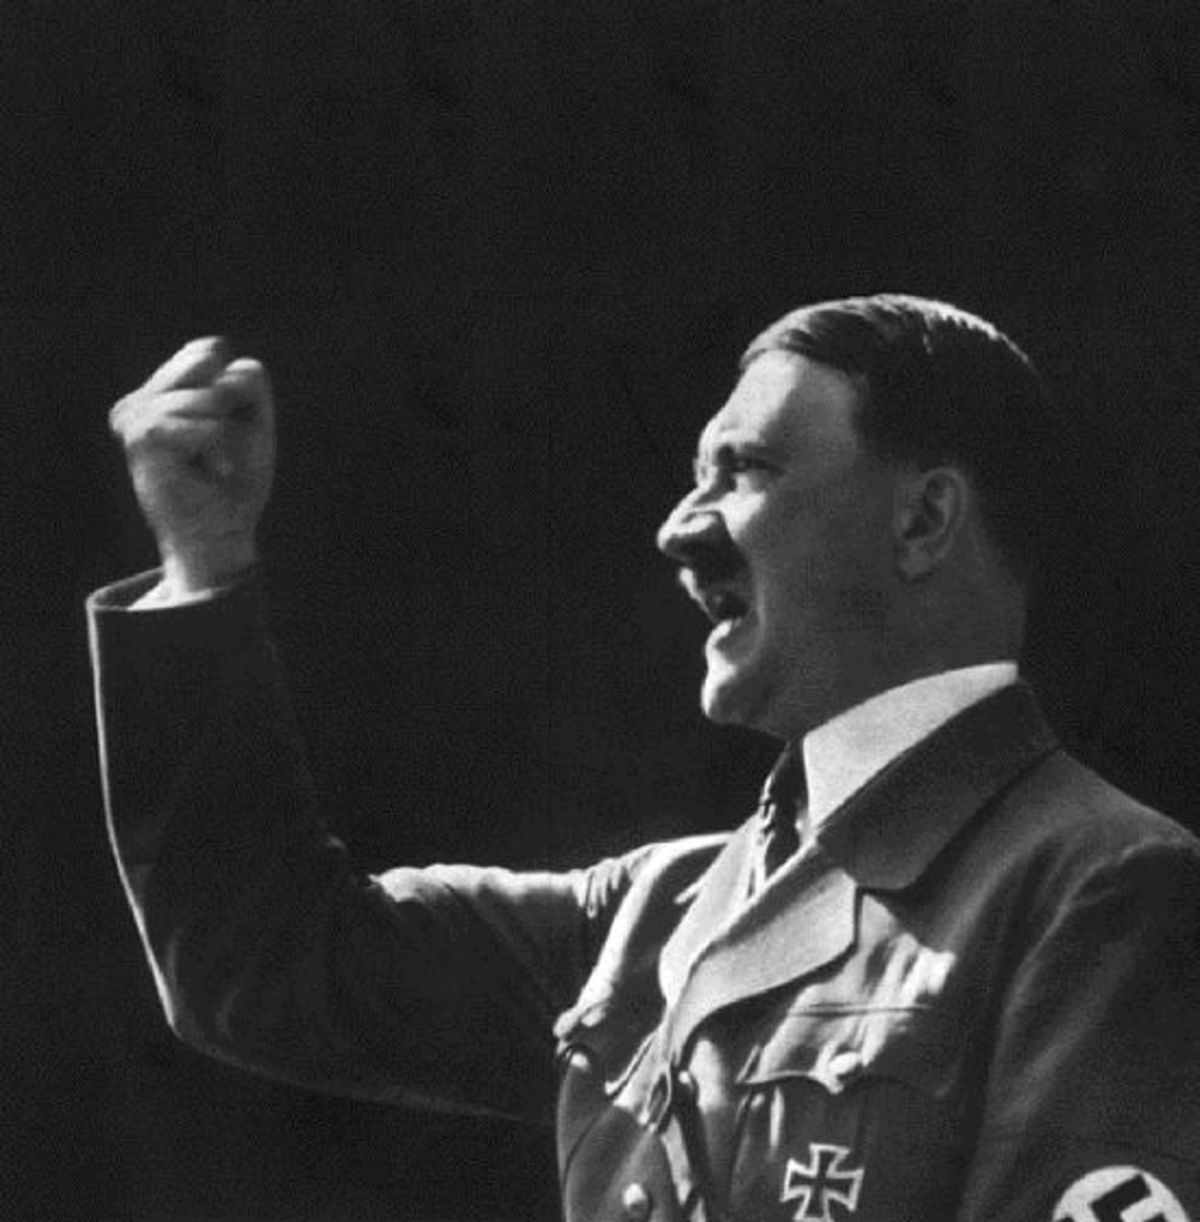 Ένας Εβραίος υποστηρίζει την επανέκδοση του “Αγών μου” του Χίτλερ και εξηγεί γιατί